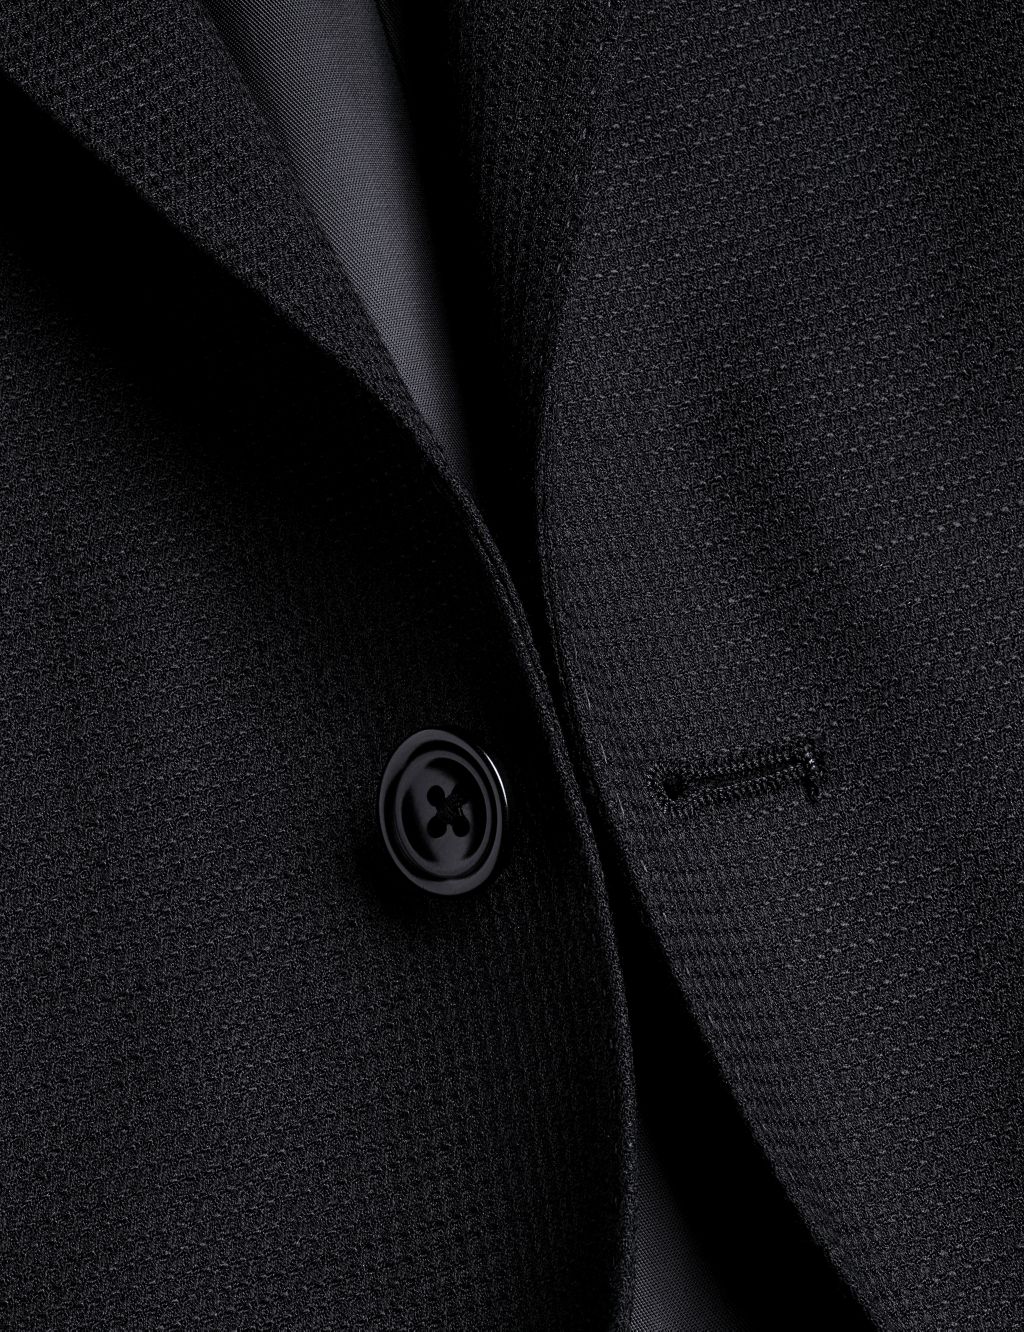 Men's Suits | M&S